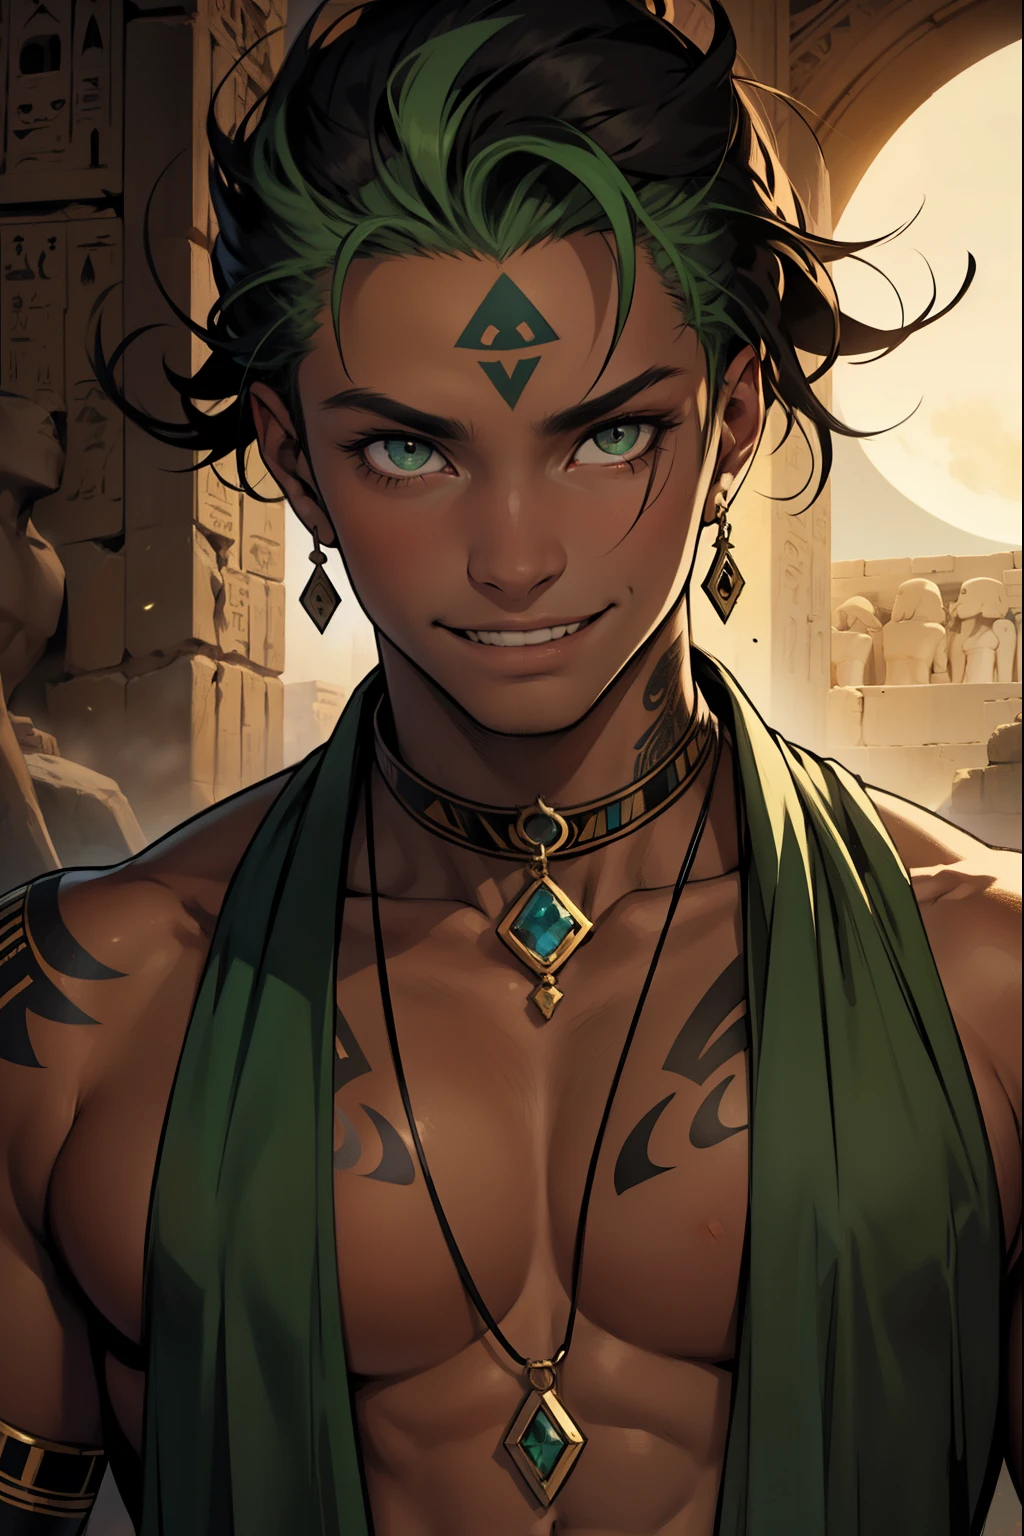 Schöne 15 Jahre alt, dünne grüne Augen. , Er hat ein schwarzes Mondtattoo am Hals., dunkle Haut im Hintergrund. Der alte Ägypter lächelt mit einem schelmischen und bösen Lächeln. 